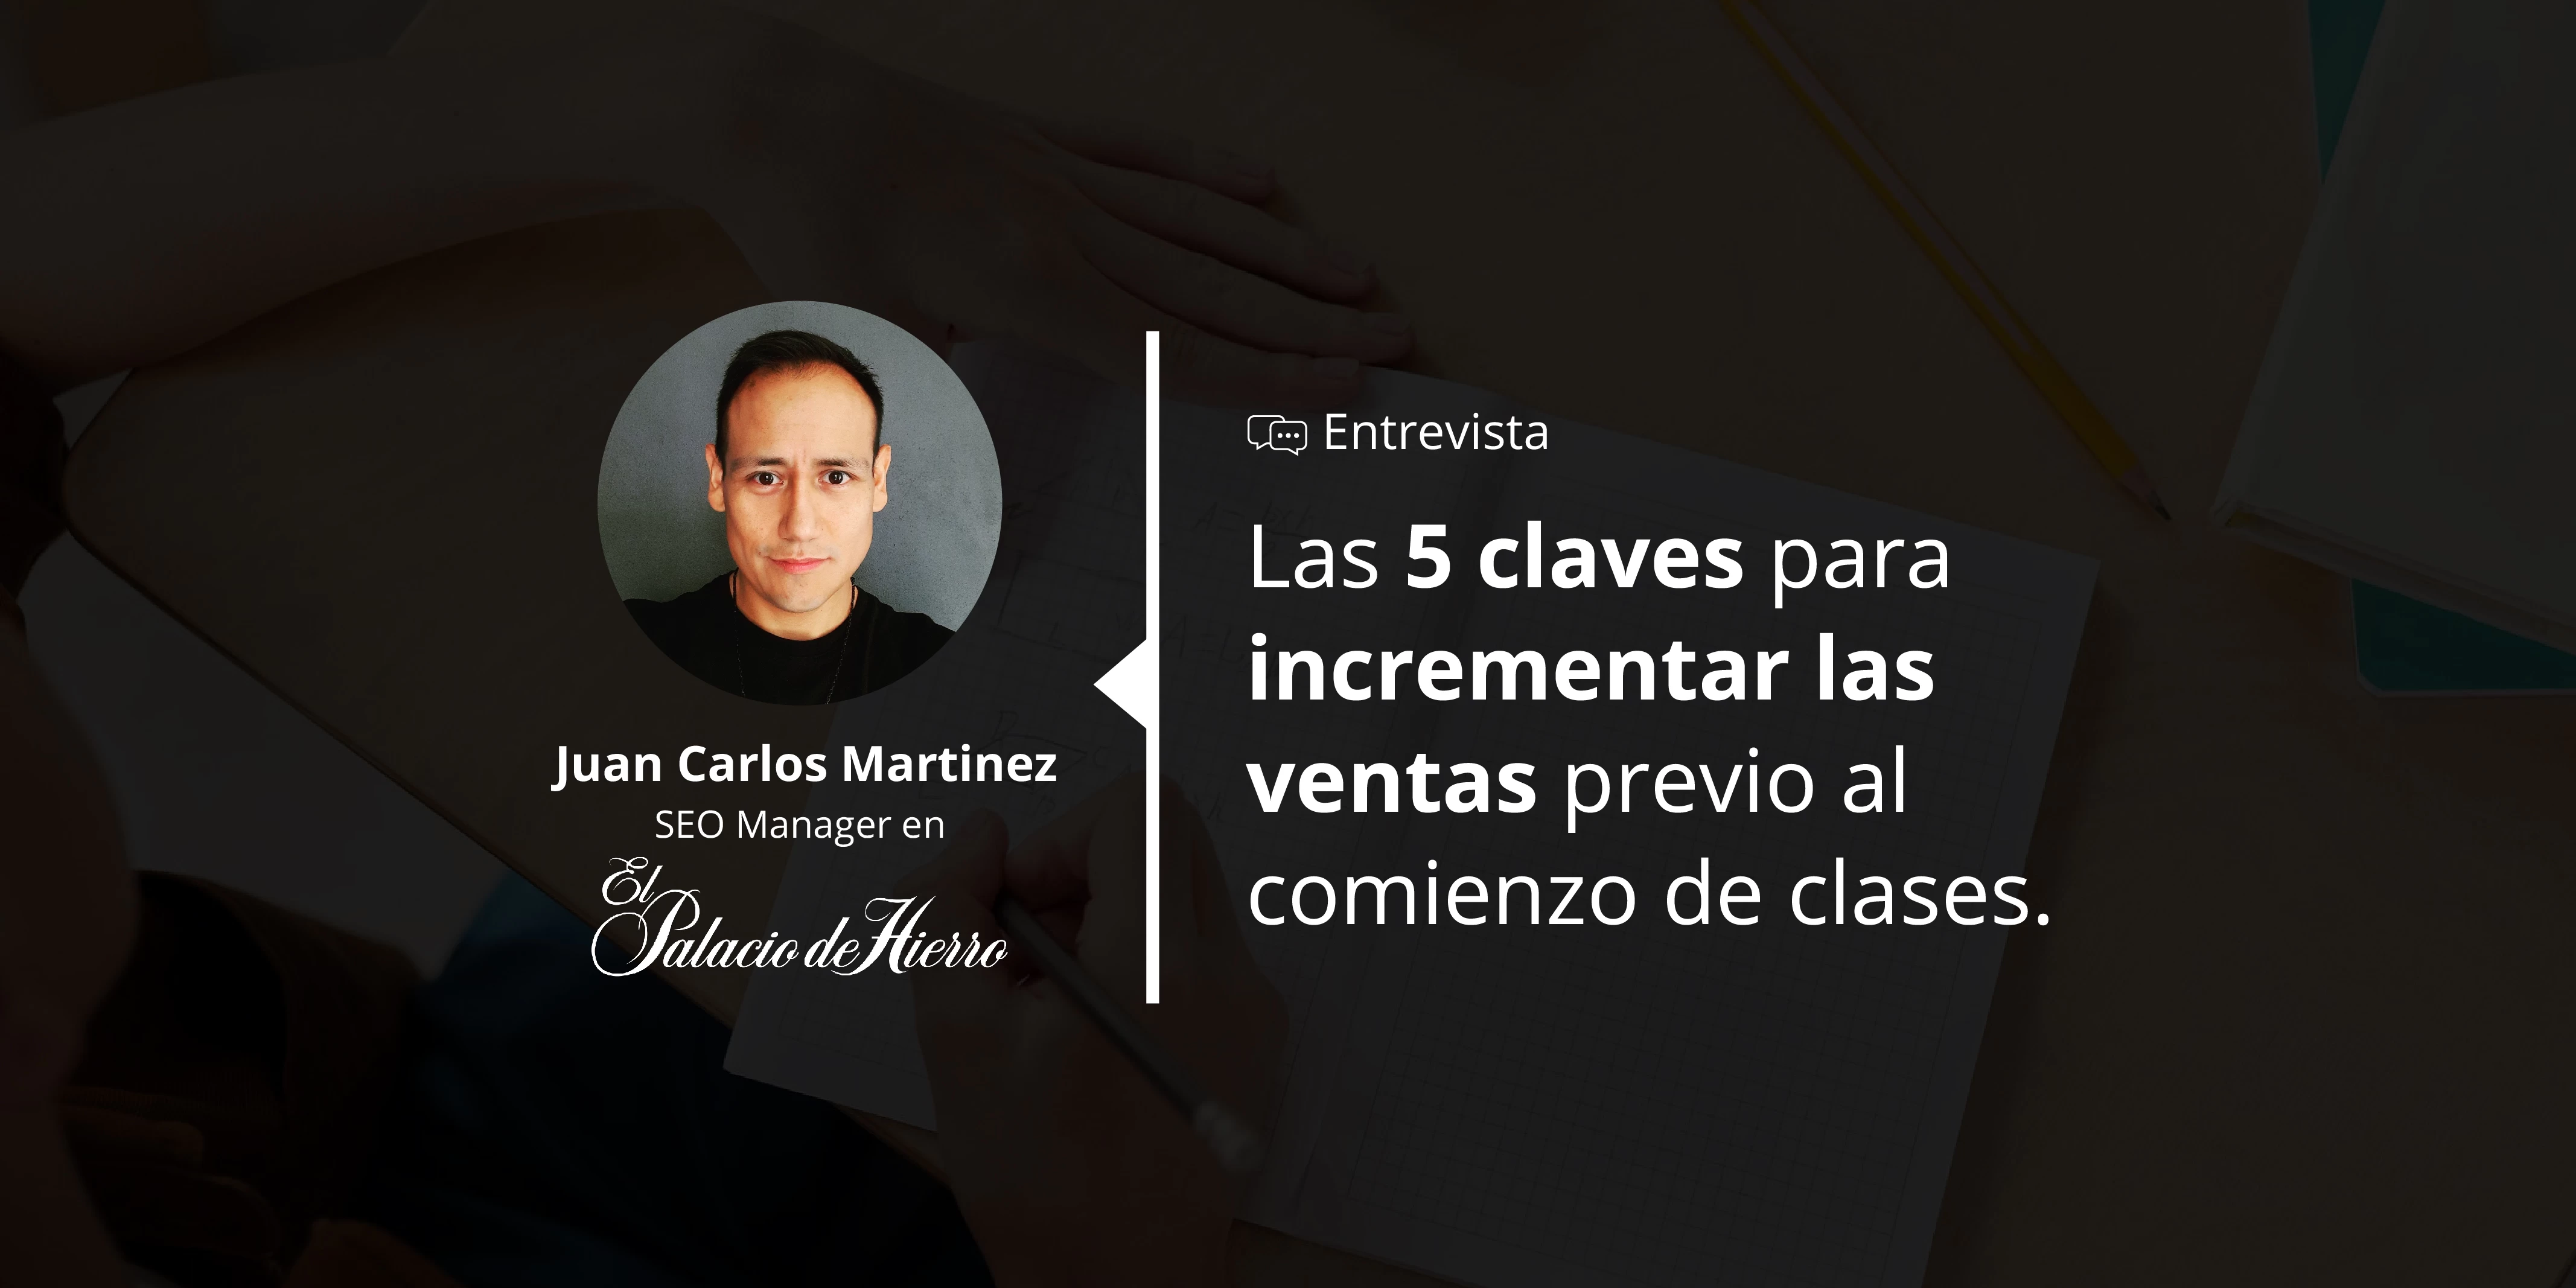 Las 5 claves para incrementar las ventas previo al comeinzo de clases por Juan Carlos Martinez